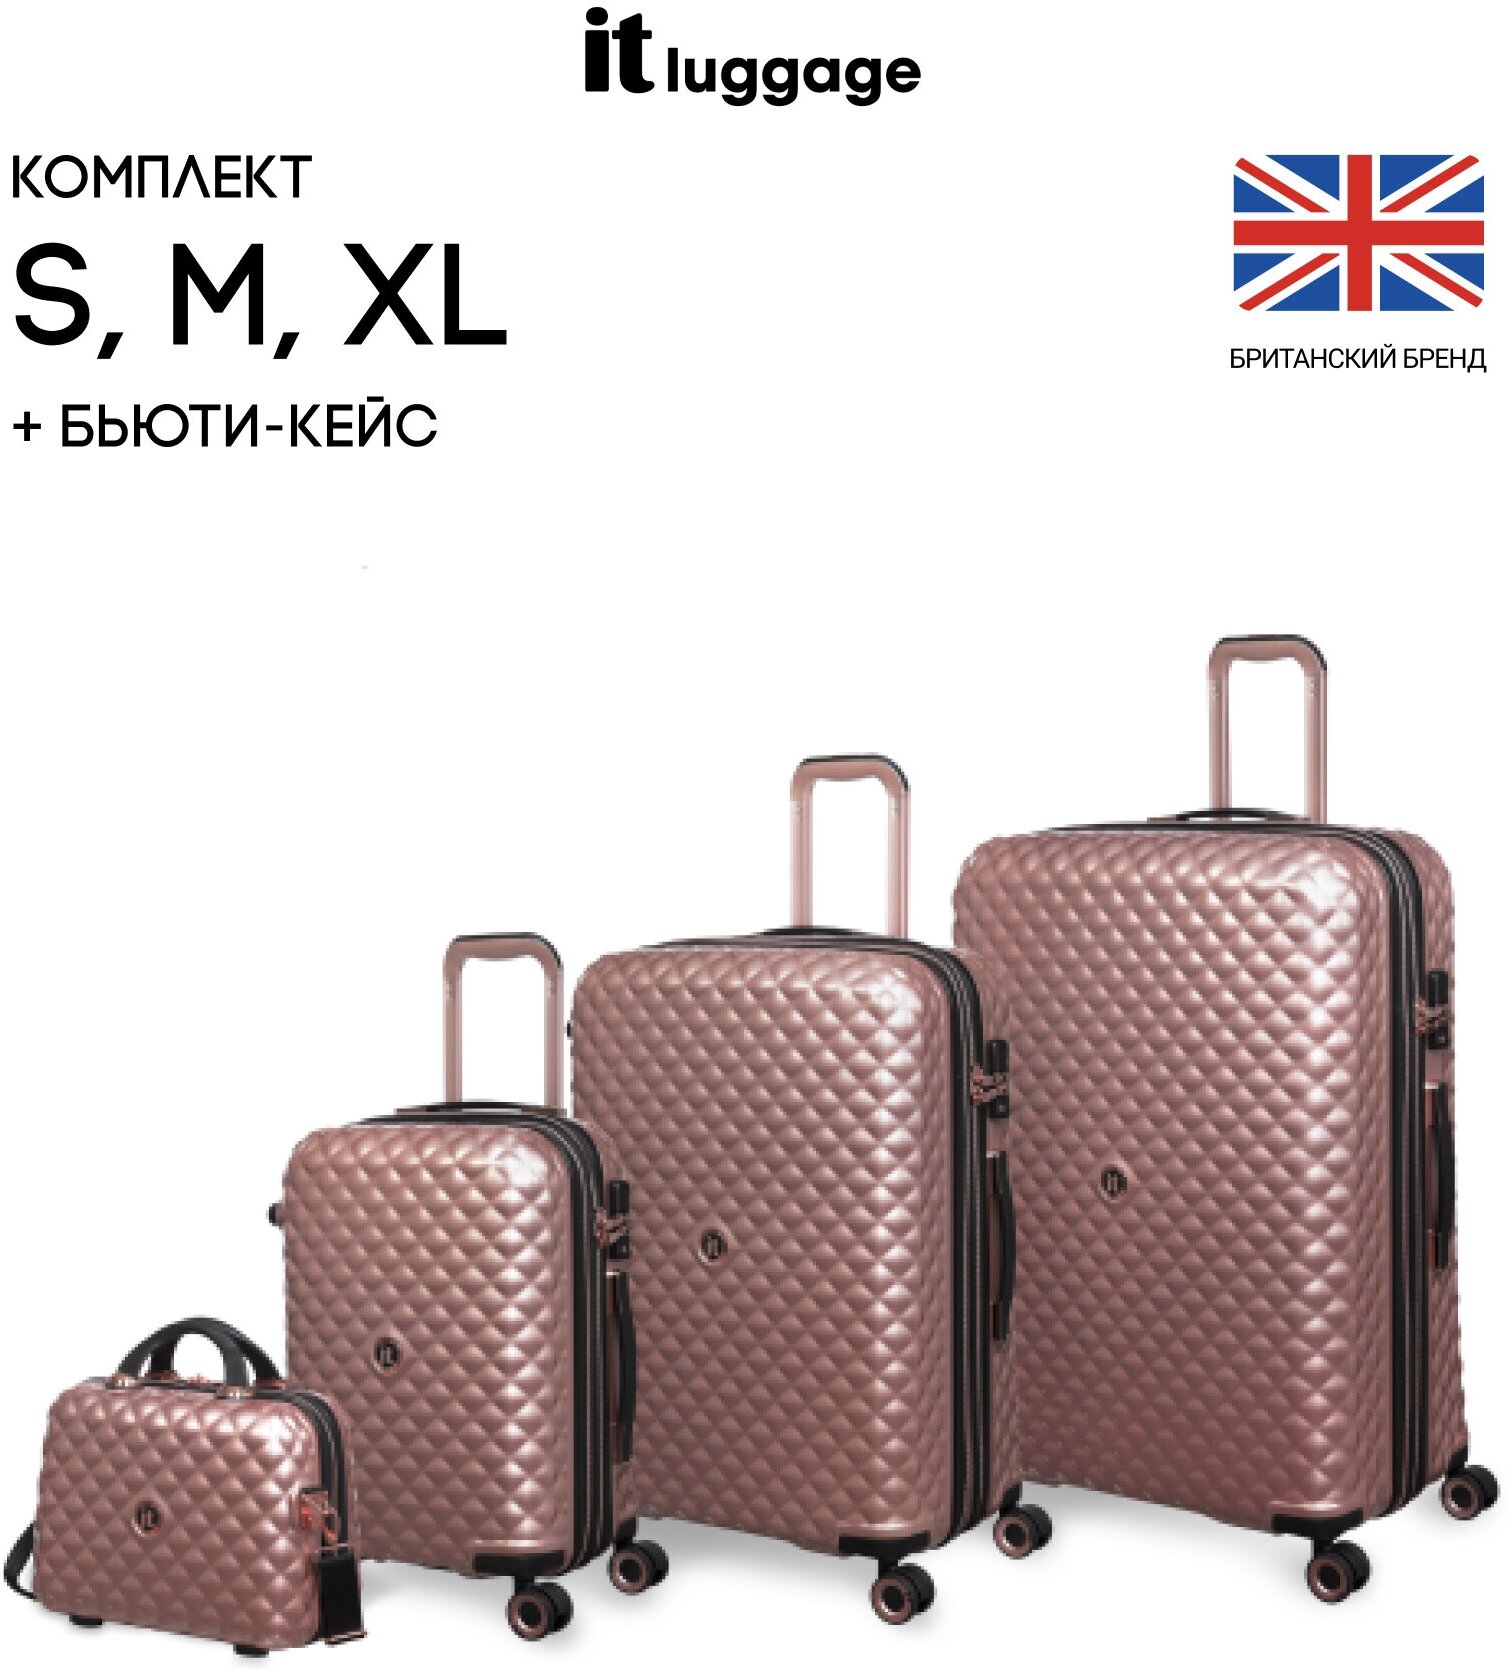 Комплект чемоданов IT Luggage, 4 шт.